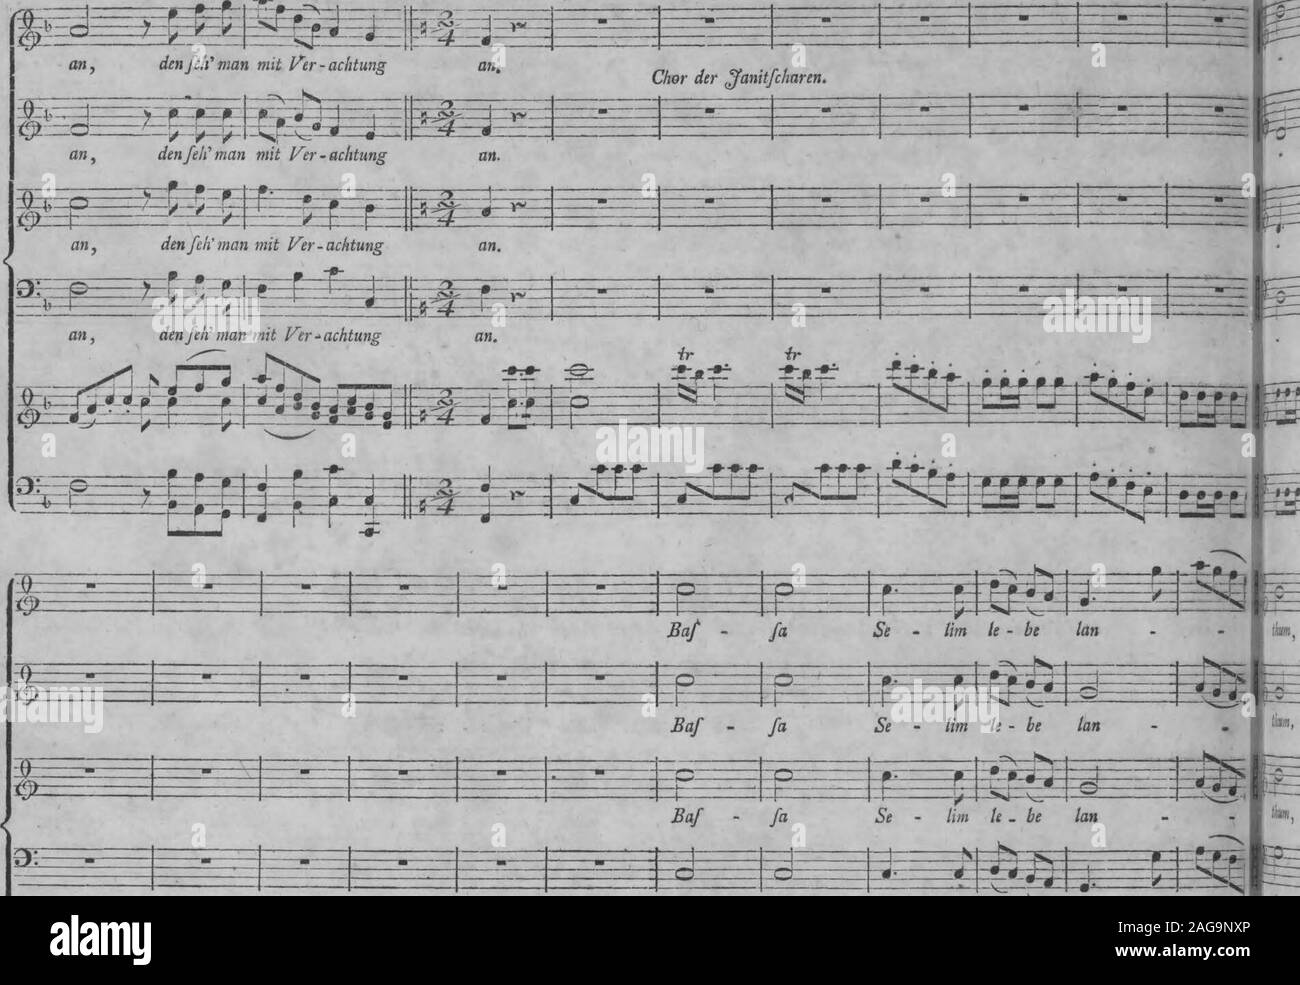 . Die Entfuhrung aus dem Serail : ein komisches Singspiel in drey Aufzugen (1796). s^Ü^üüHÜ kann, den/eh n ^ mi / -0--£9- .7*- -0- -*- -fS- -®- | I | 1&GT; Mozart, Entführ, ans dem Serail, =5^= 150 Allegro vivace.. Baf fa Se - lim le - essere tan Foto Stock